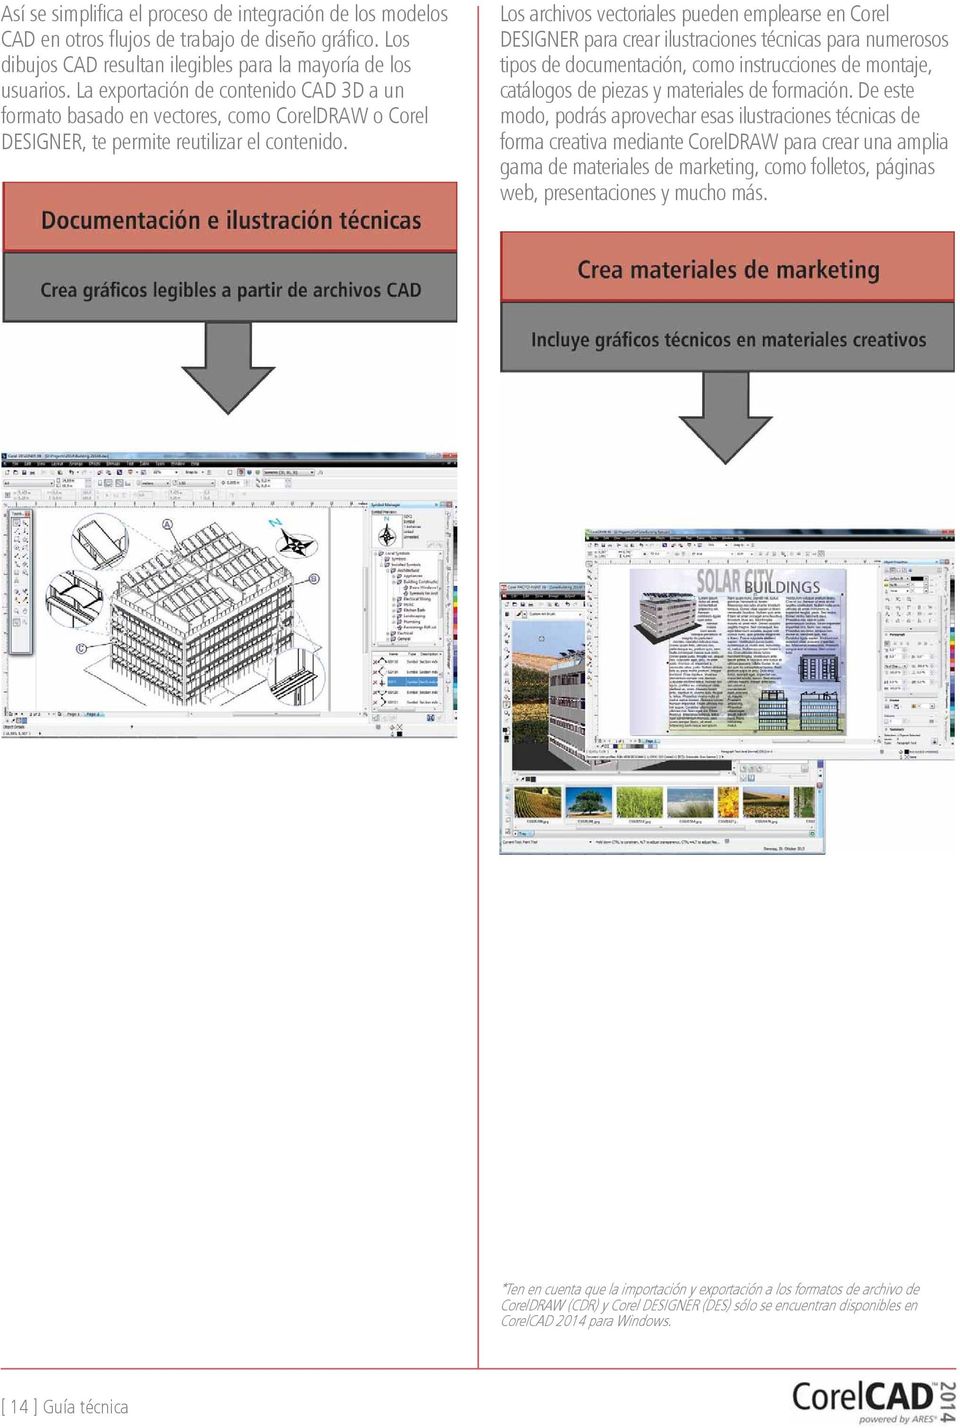 Los archivos vectoriales pueden emplearse en Corel DESIGNER para crear ilustraciones técnicas para numerosos tipos de documentación, como instrucciones de montaje, catálogos de piezas y materiales de